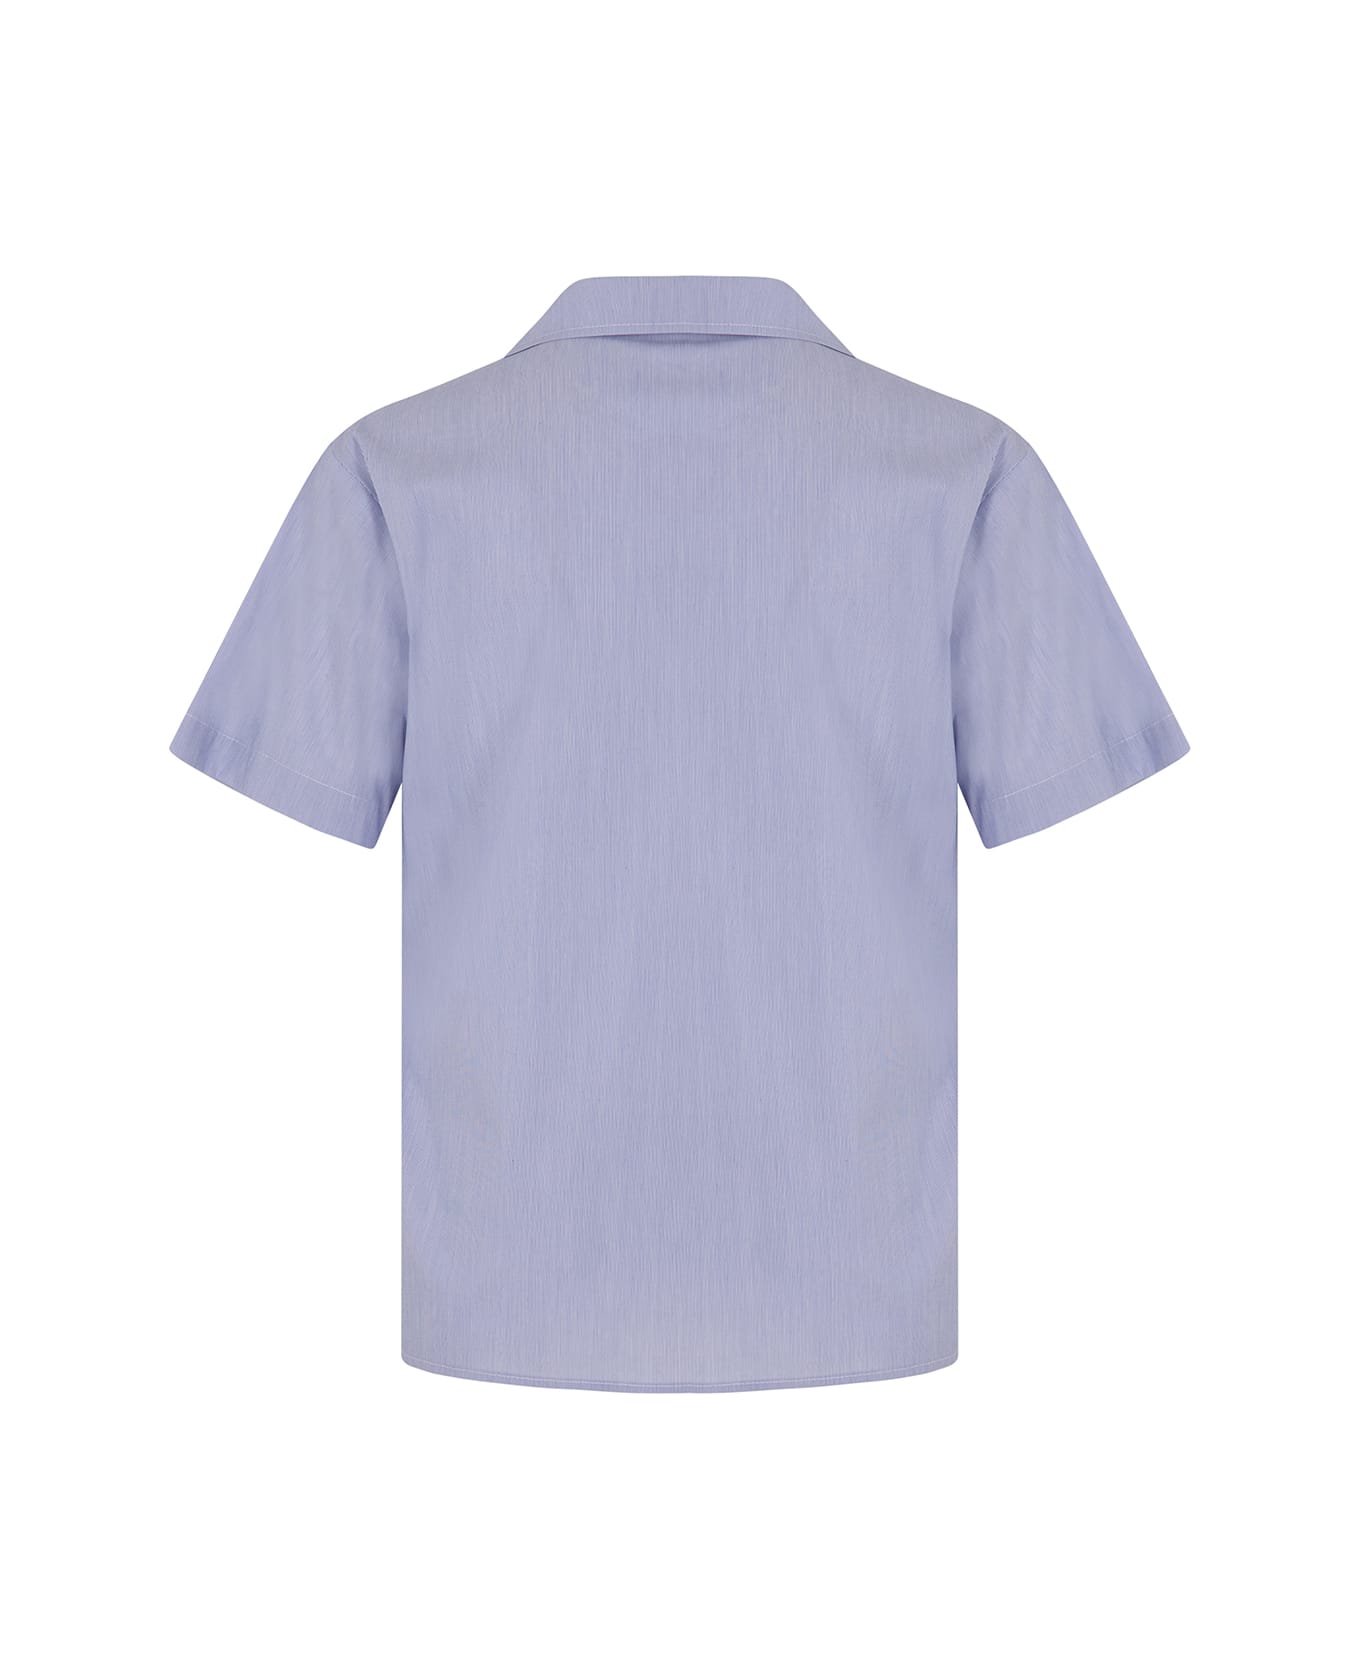 MSGM Striped Shirt - Light blue シャツ